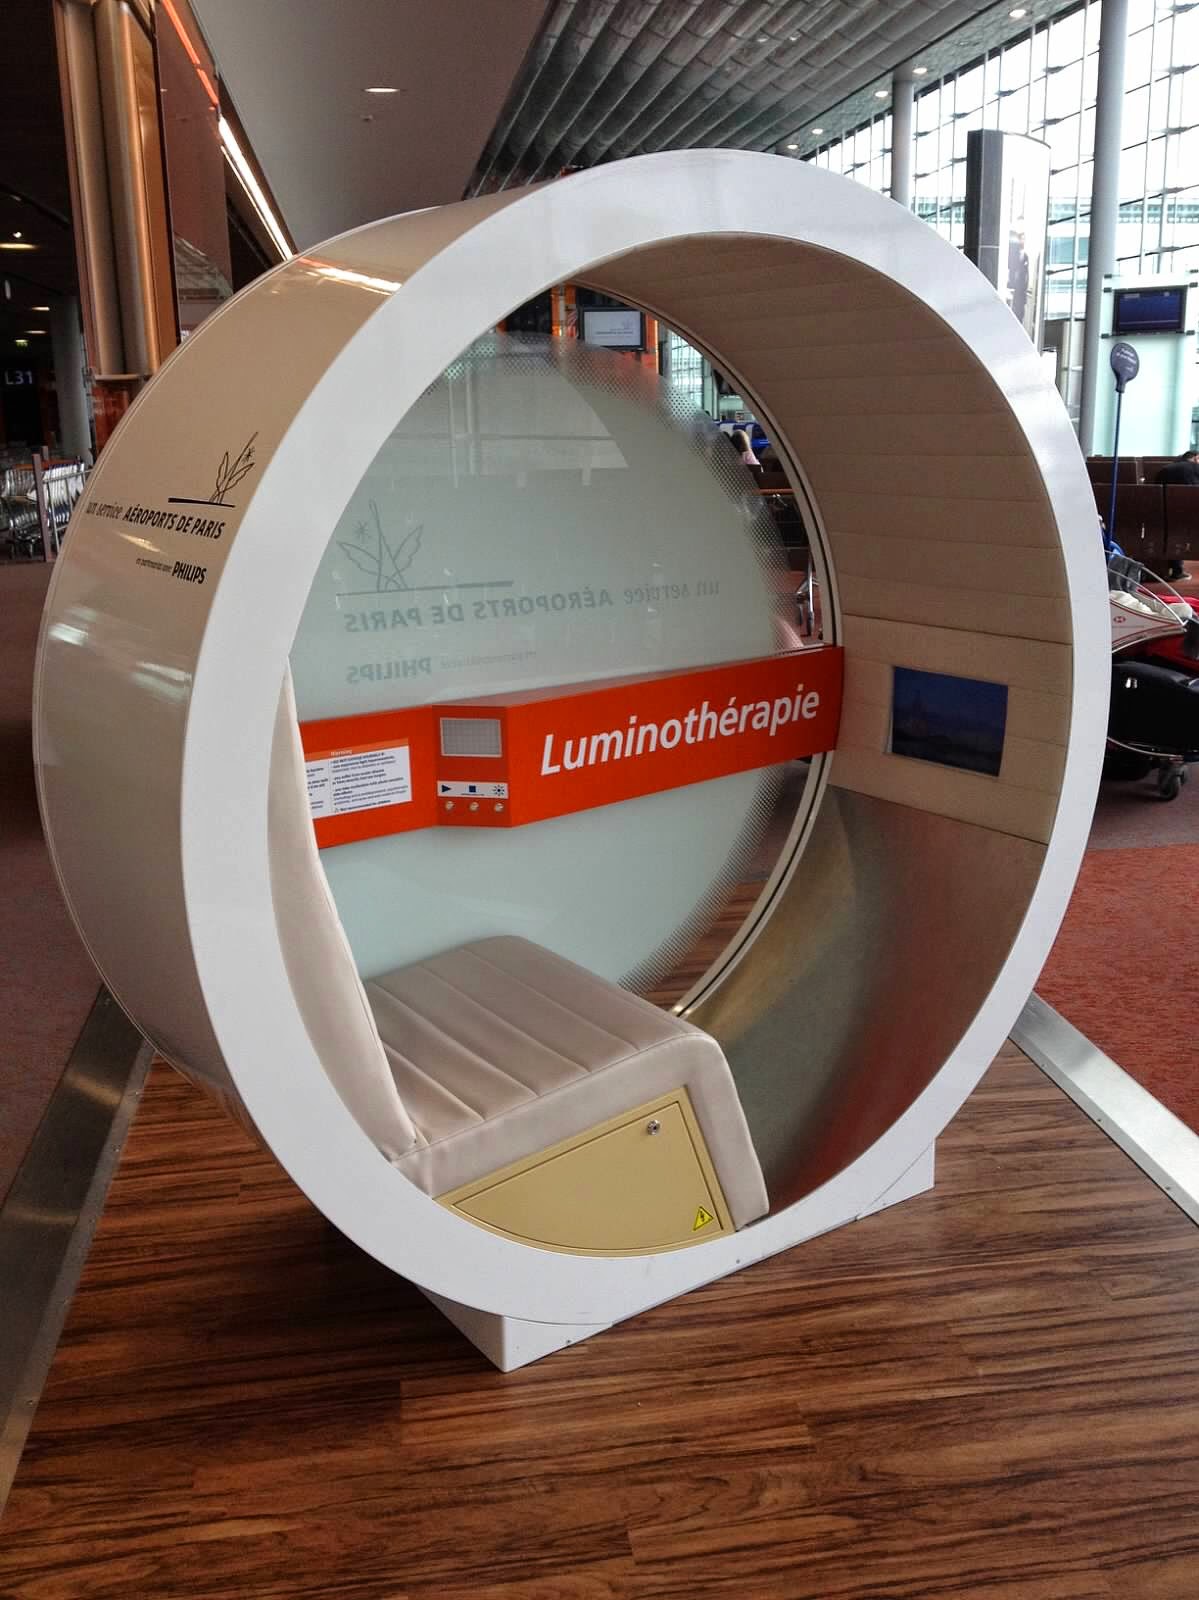 Luminotherapie-Charles-De-Gaulle-Airport-Paris